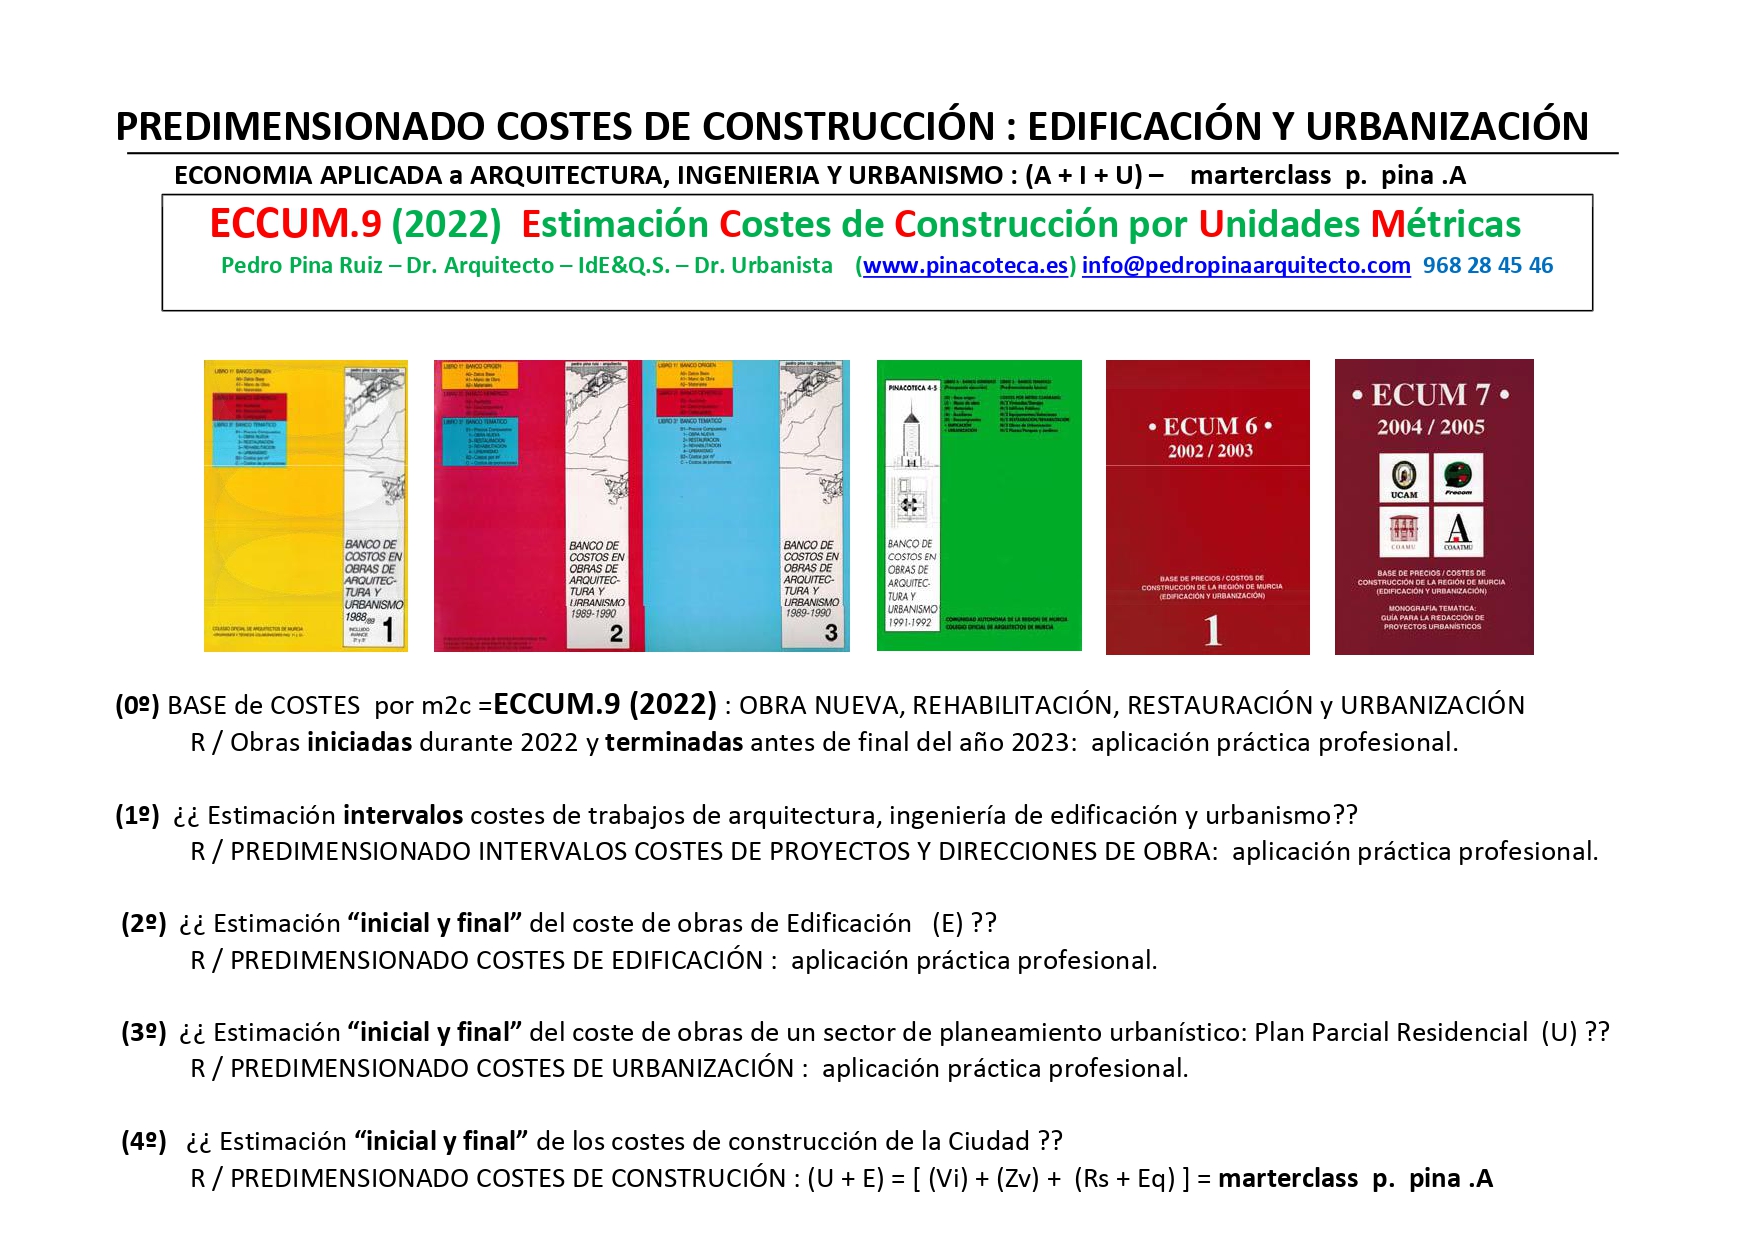 ECCUM . 9 (2022) : Estimación costes de construcción: Edificación, Rehabilitación y Urbanización. (Autor: Pedro Pina - Dr. Arquitecto -(QS) -Dr. Urbanismo